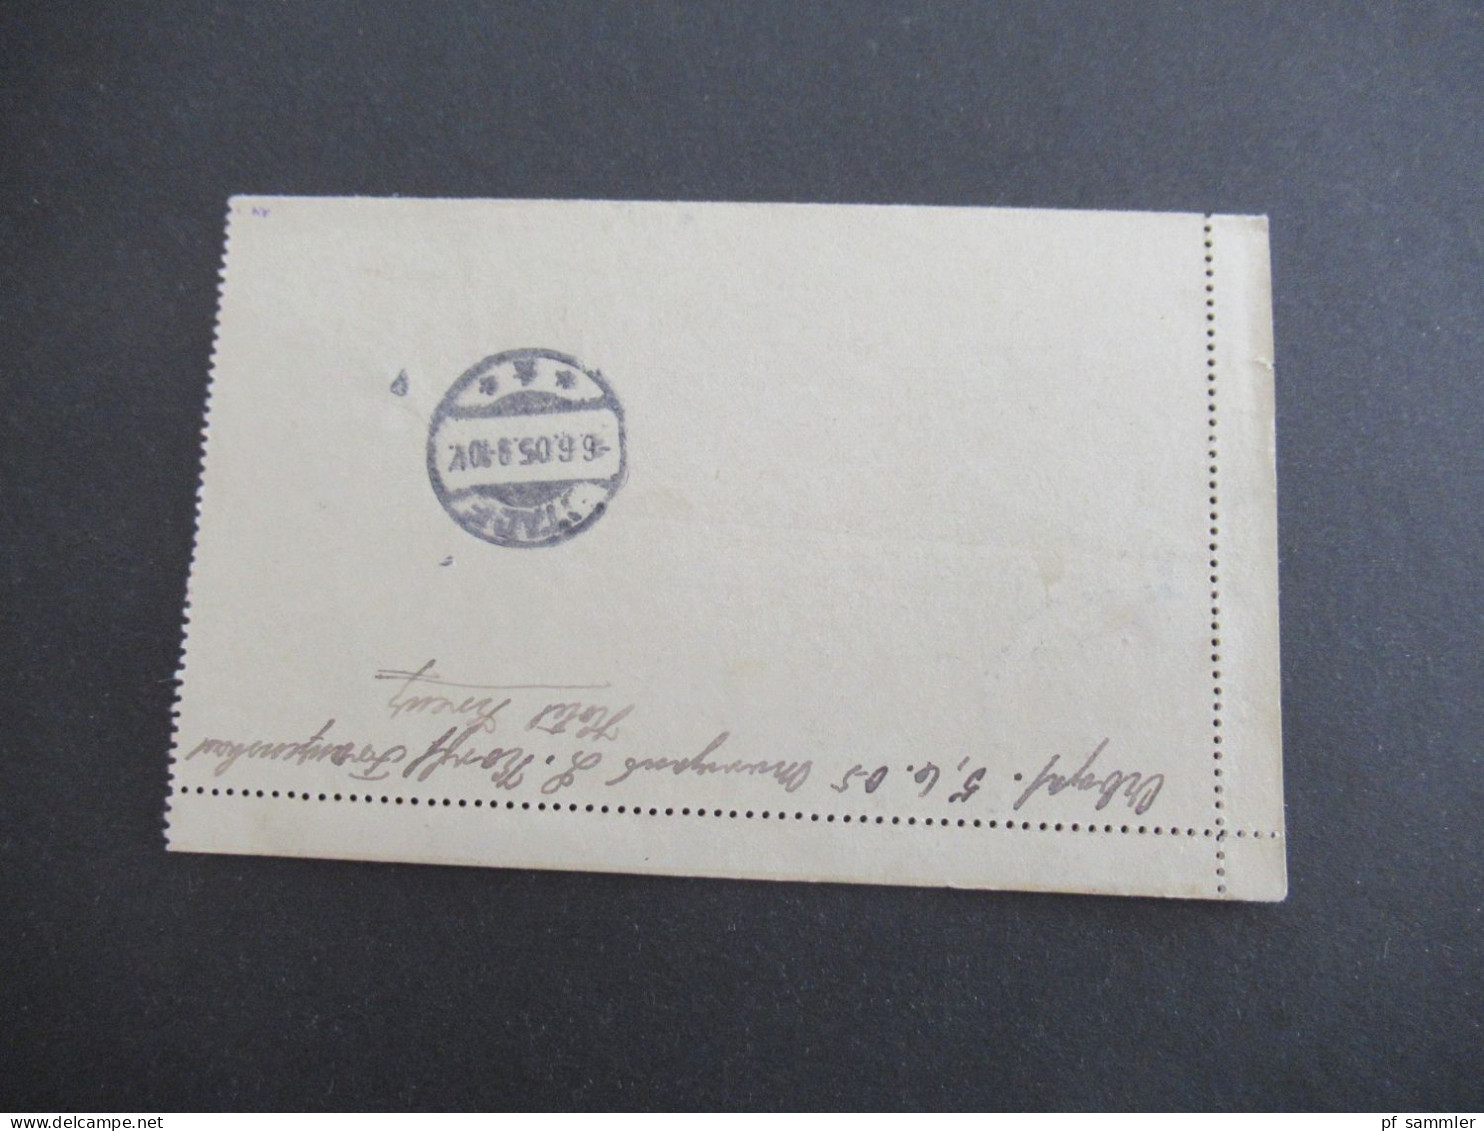 Österreich / Tschechien 1905 Kartenbrief Mit Strichstempel Franzensbad - Stade Pr. Hannover Mit Ank. Stempel - Letter-Cards